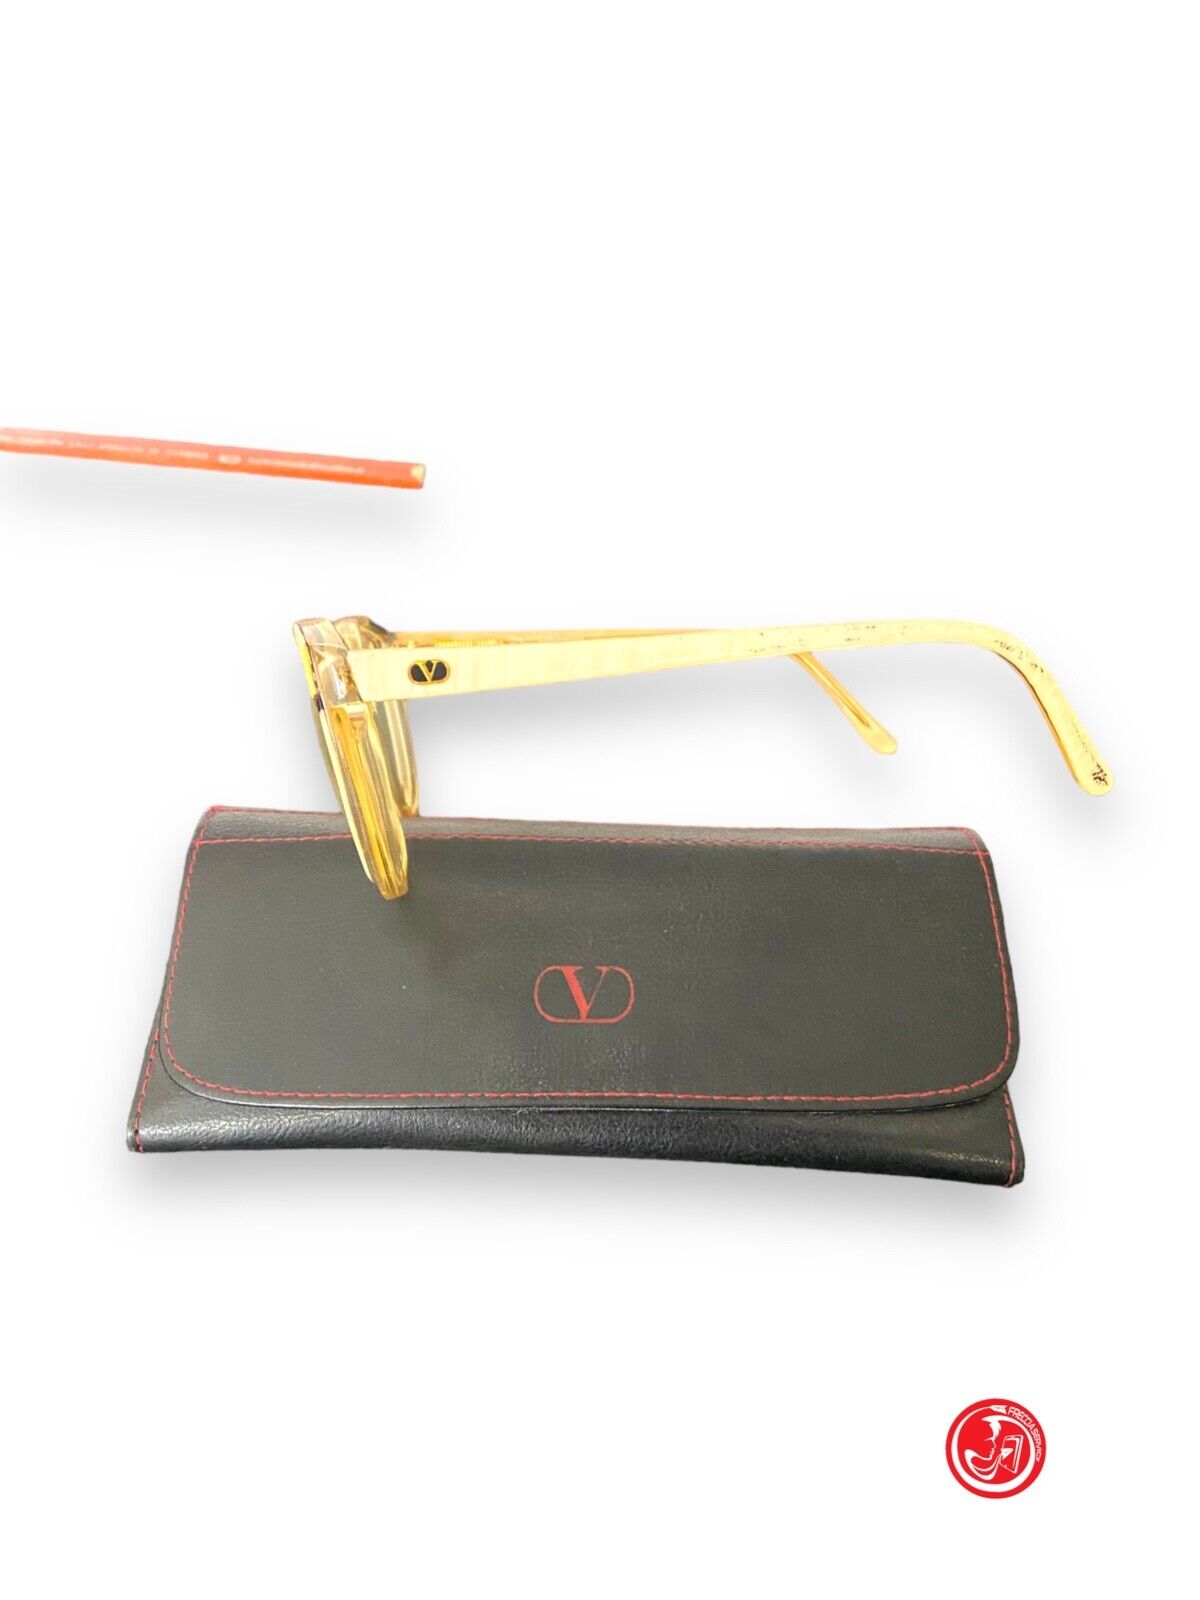 lunettes Valentino vintage avec étui